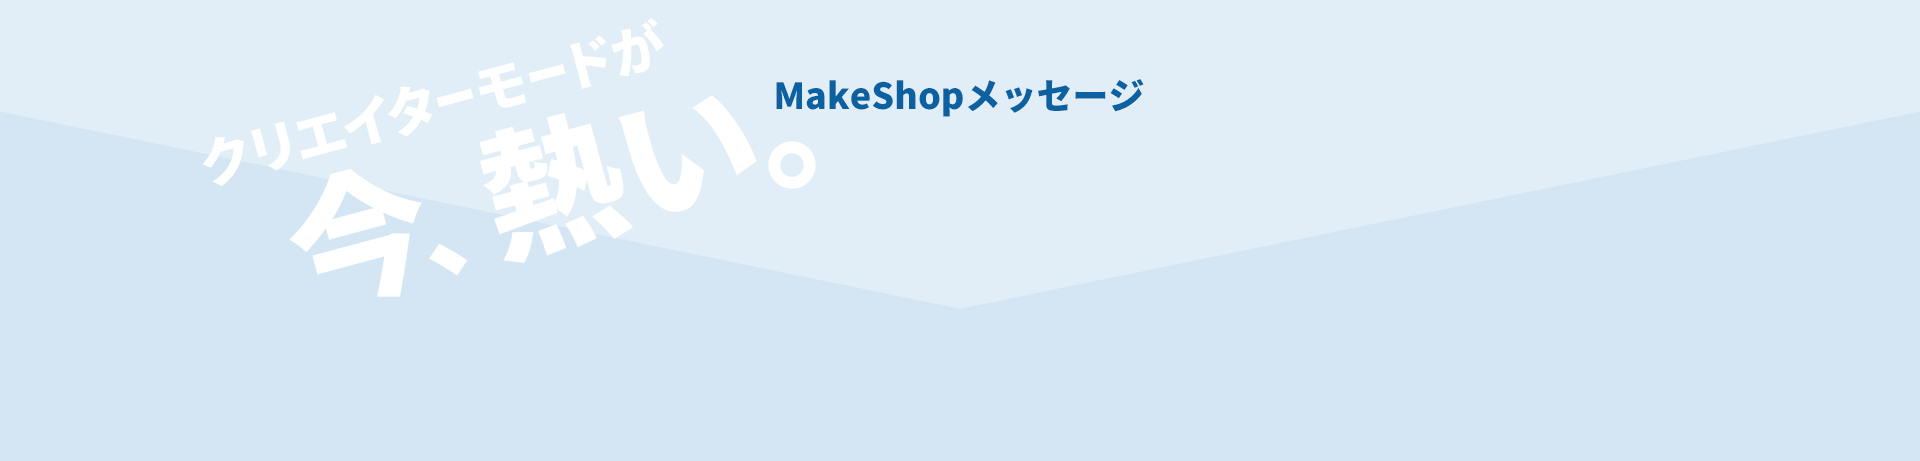 MakeShopメッセージ